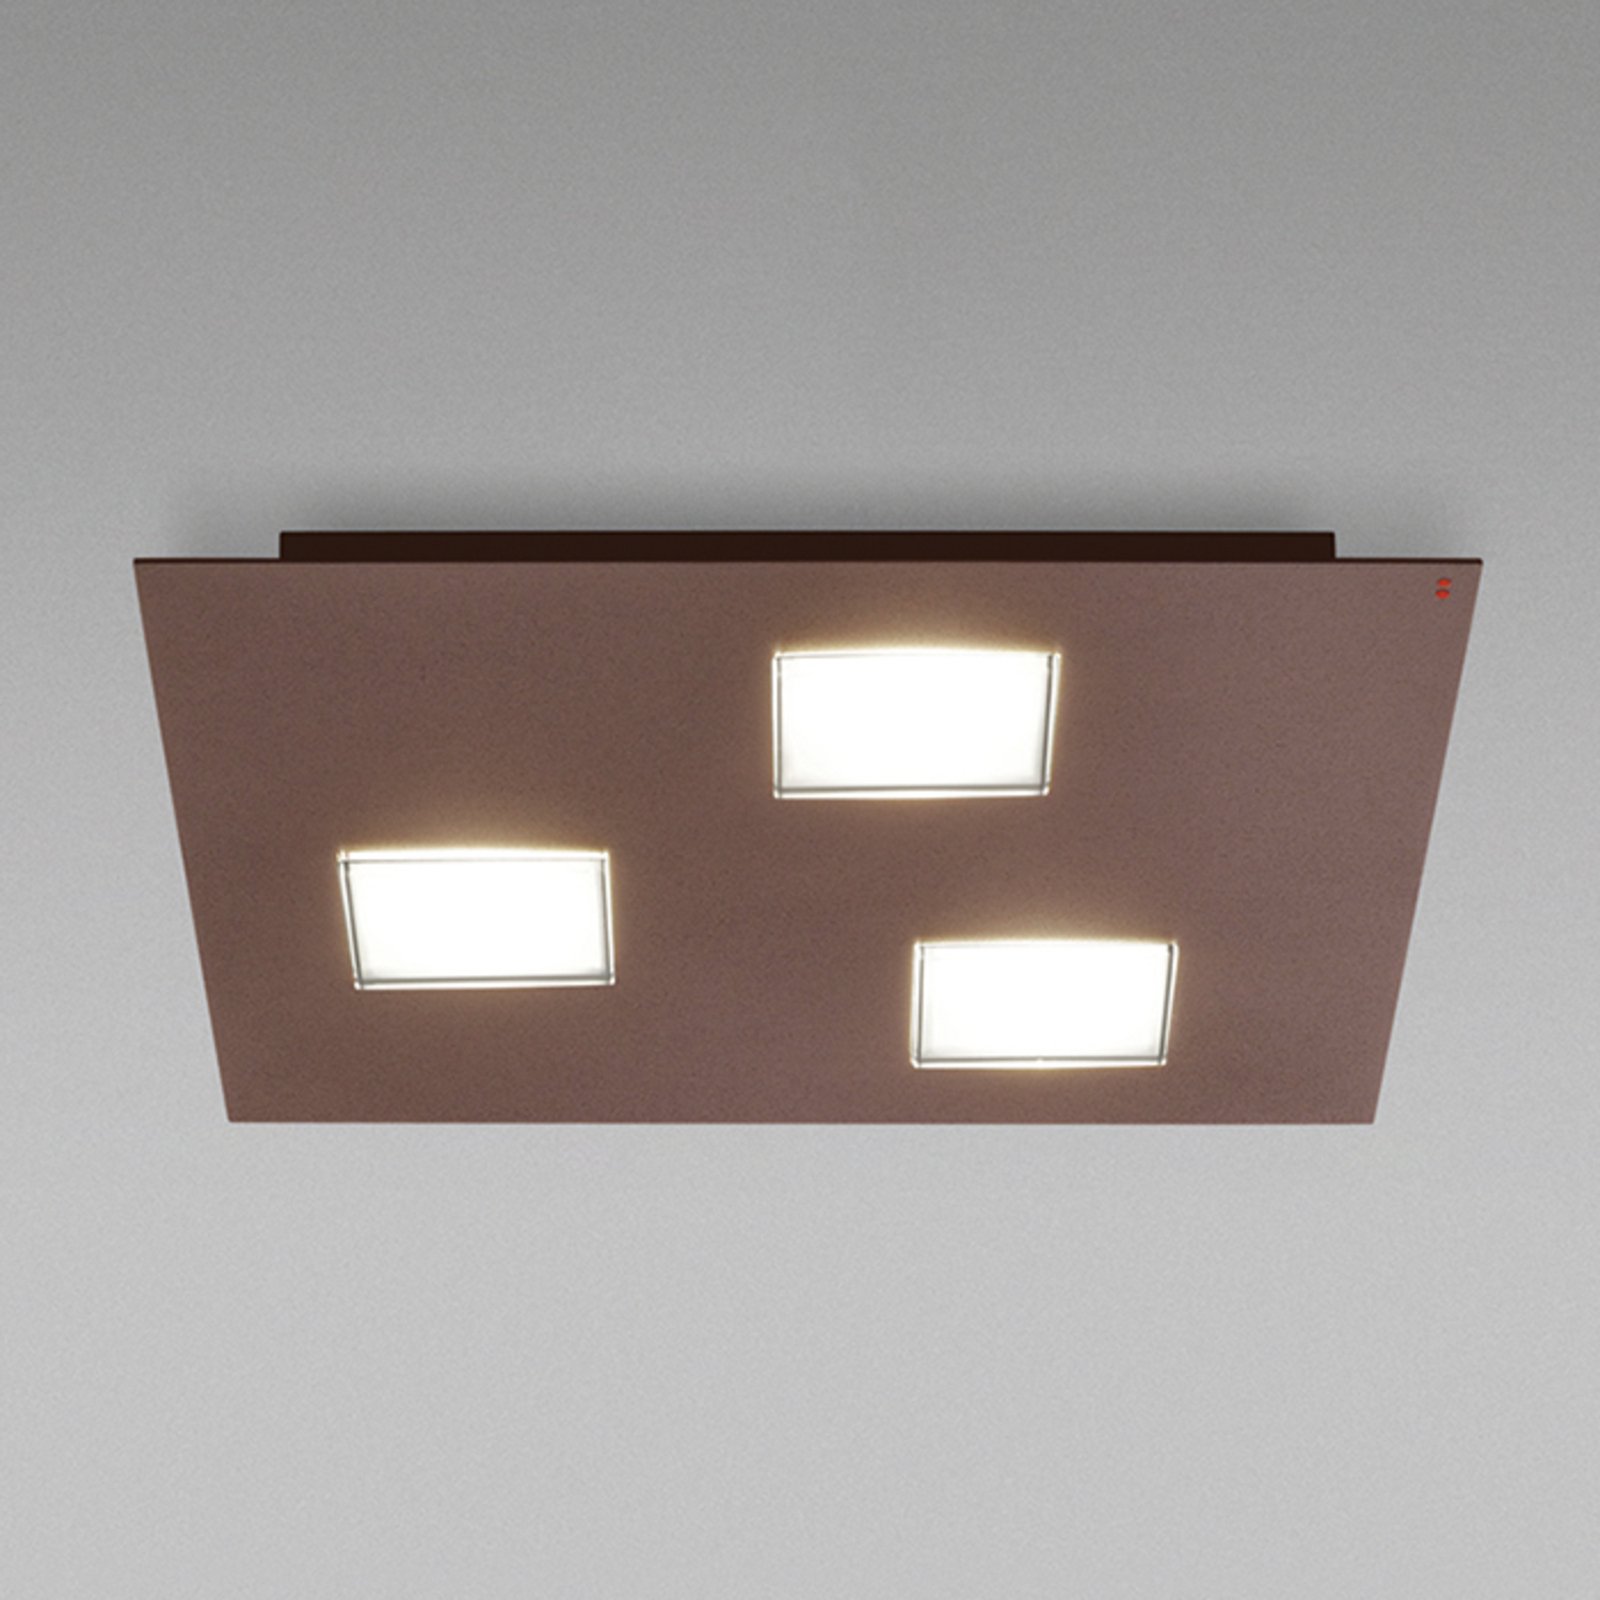 Fabbian Quarter - barna LED mennyezeti lámpa 3 égő